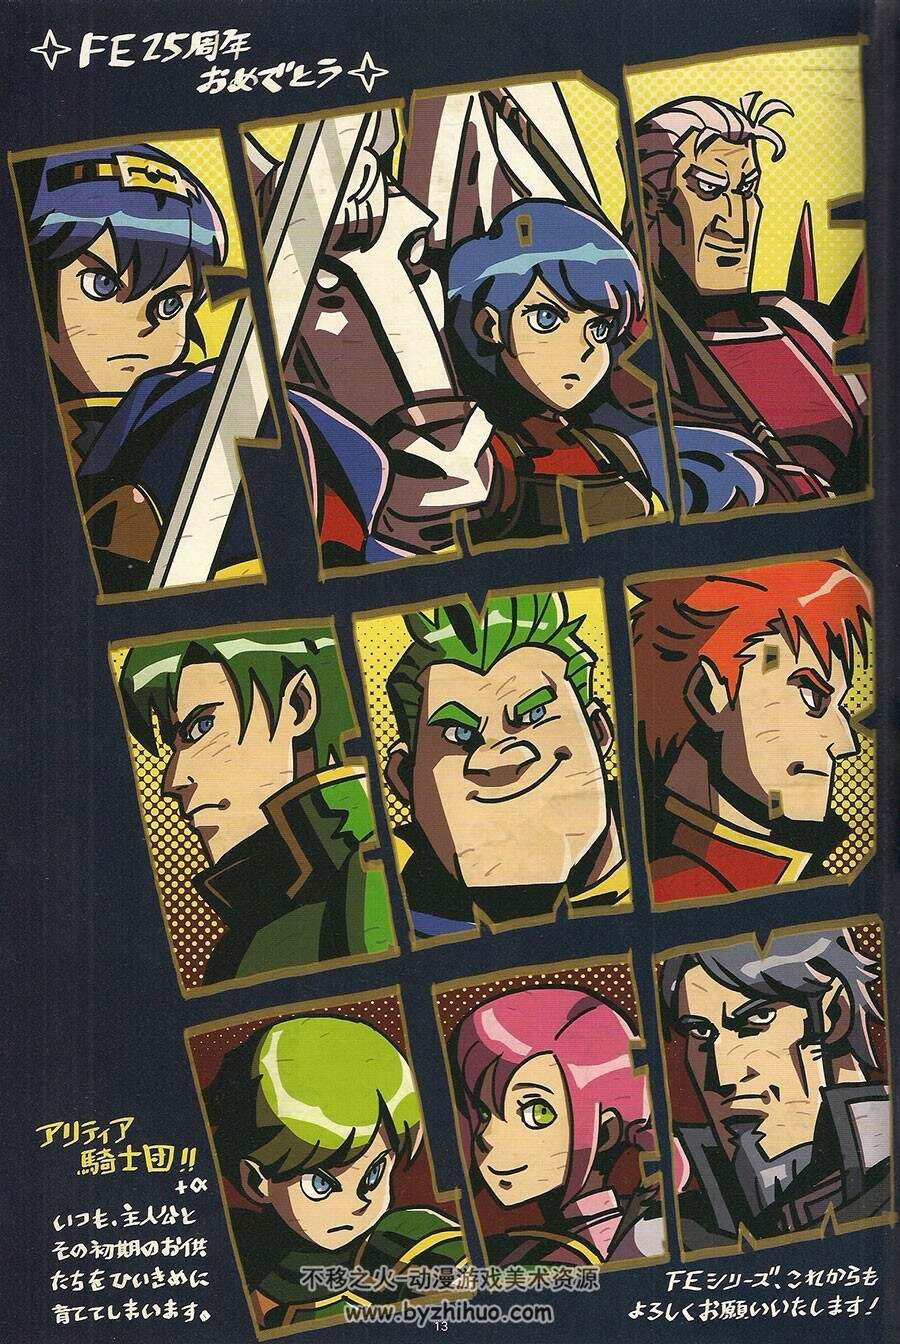 火炎之纹章 Fire Emblem 25th Anniversary Official Staff Book